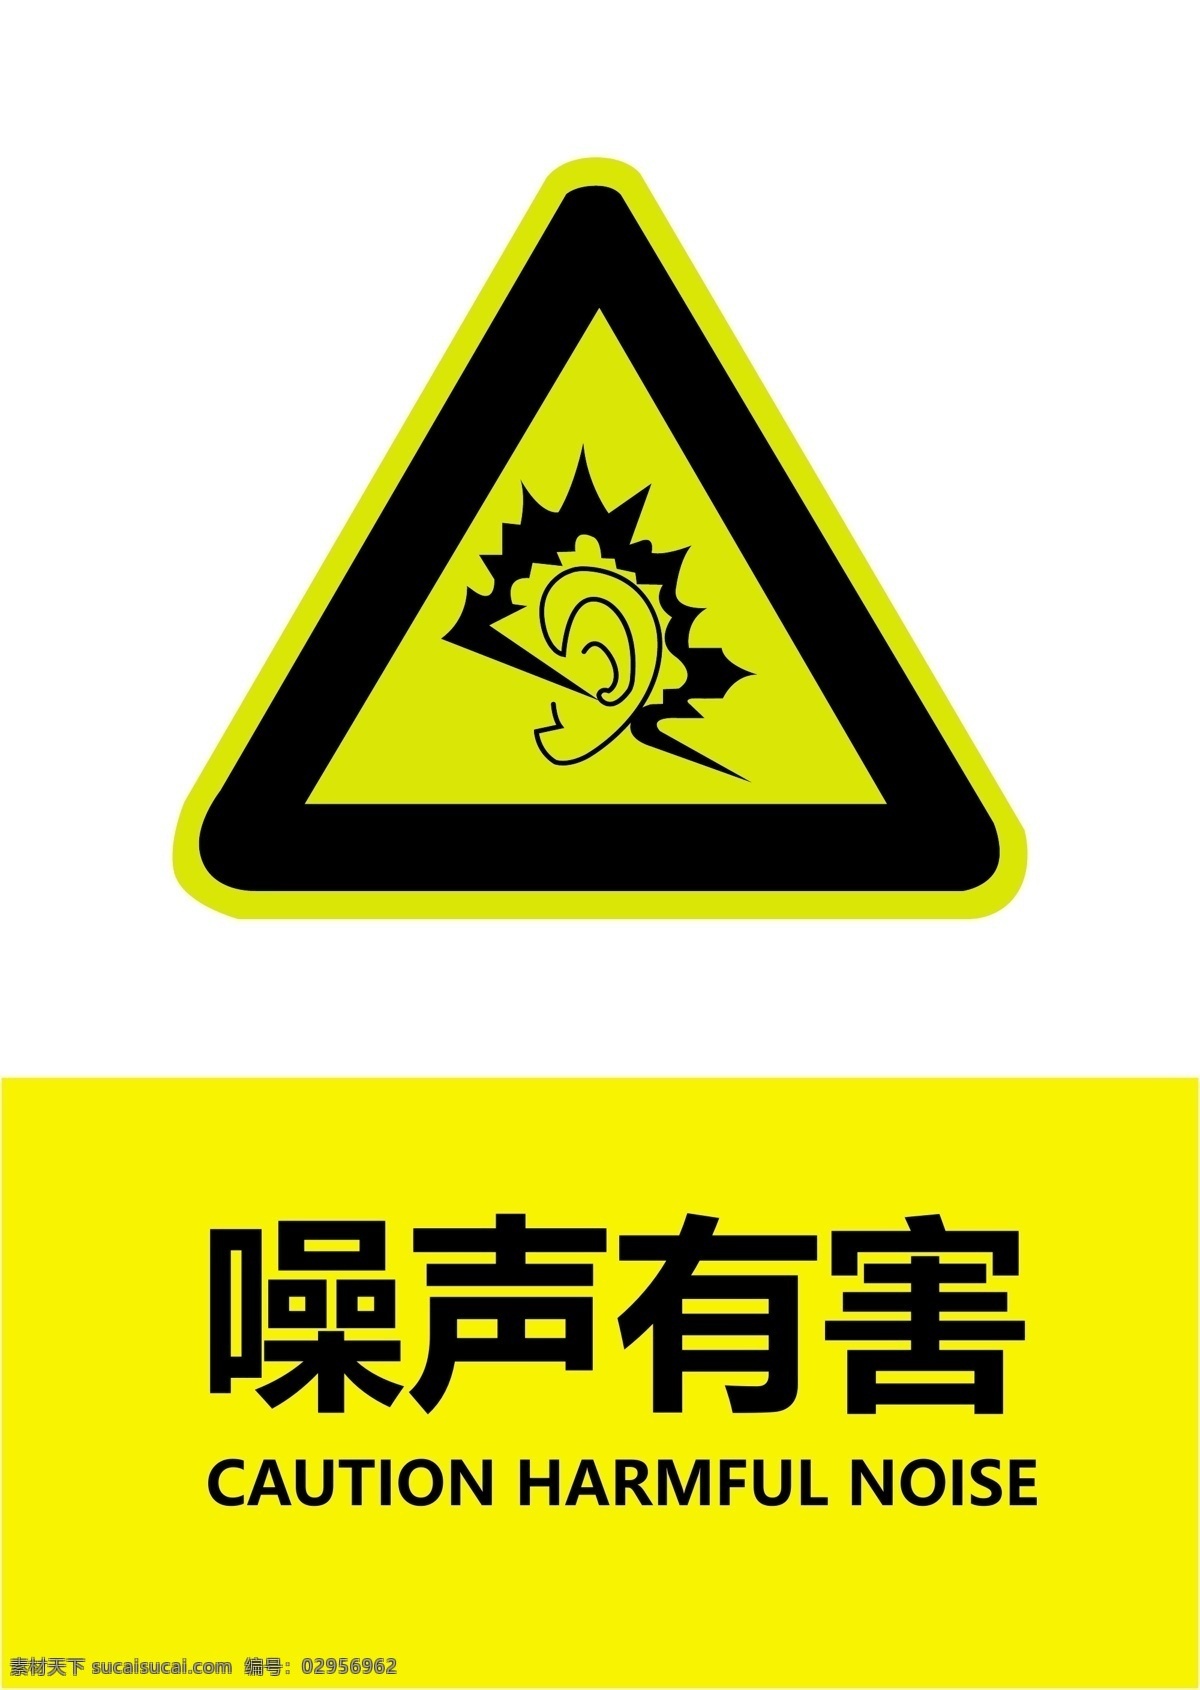 噪音有害 噪音 有害 防止噪音 污染 警示标志